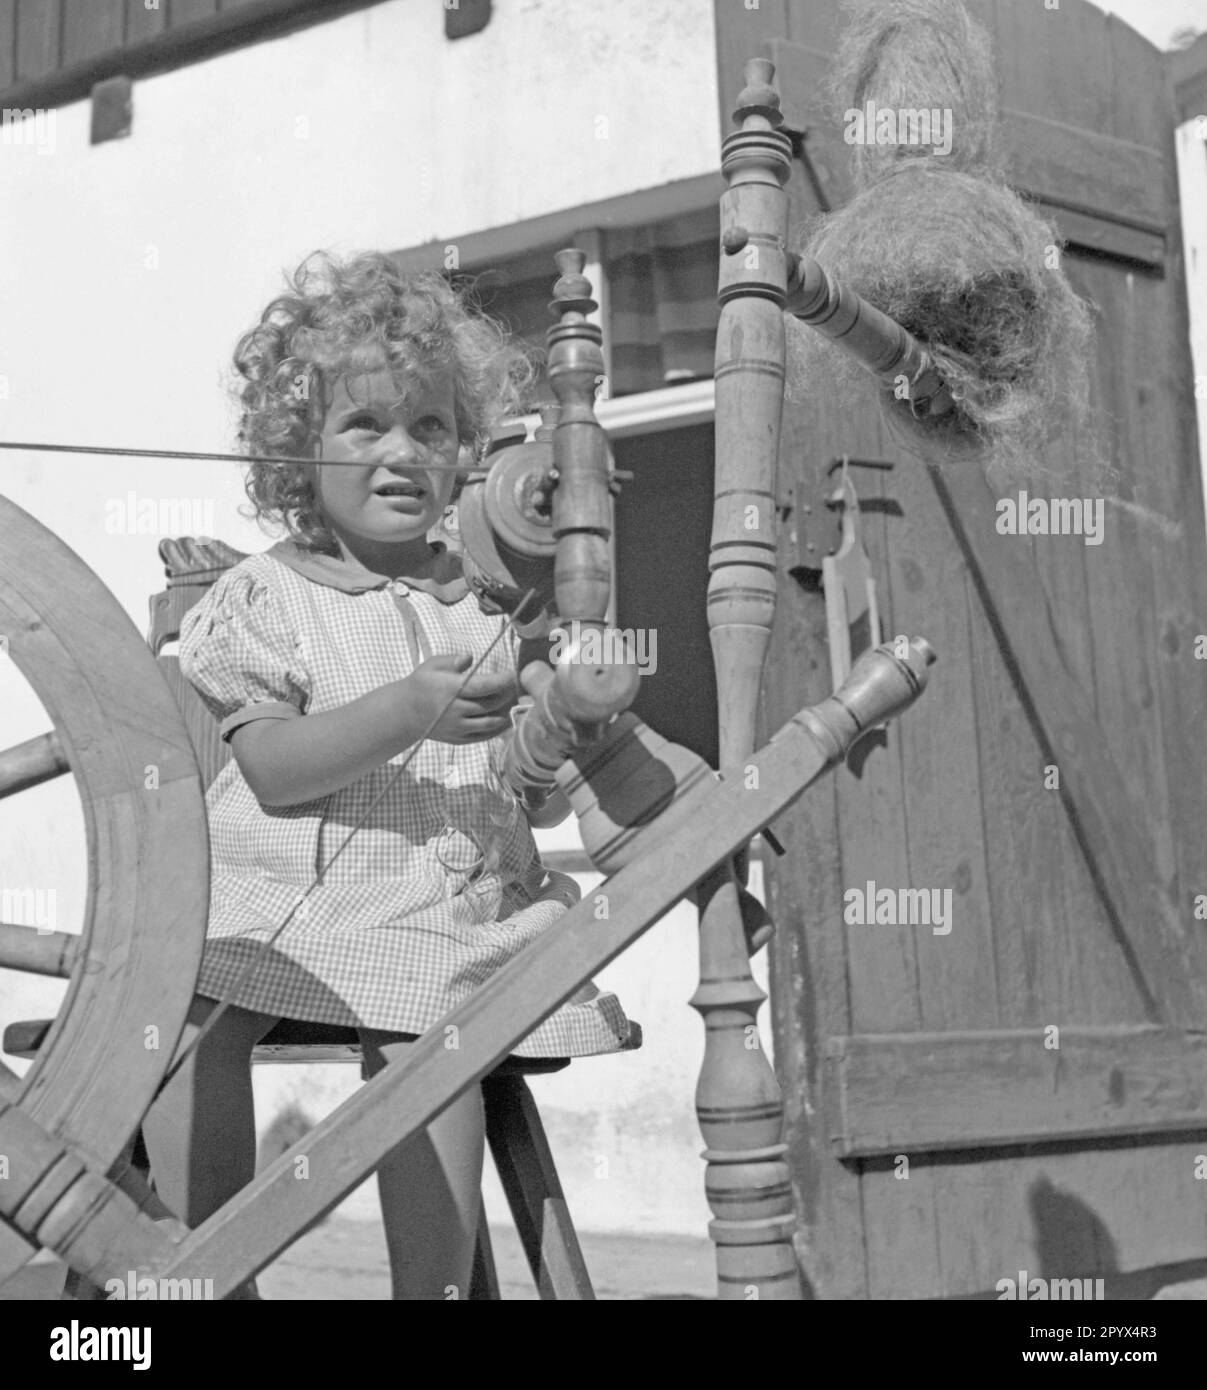 Ein Mädchen spielt mit einem sich drehenden Rad in einem Dorf an der Ostseeküste in Pommern (Kamp oder Deep). Stockfoto